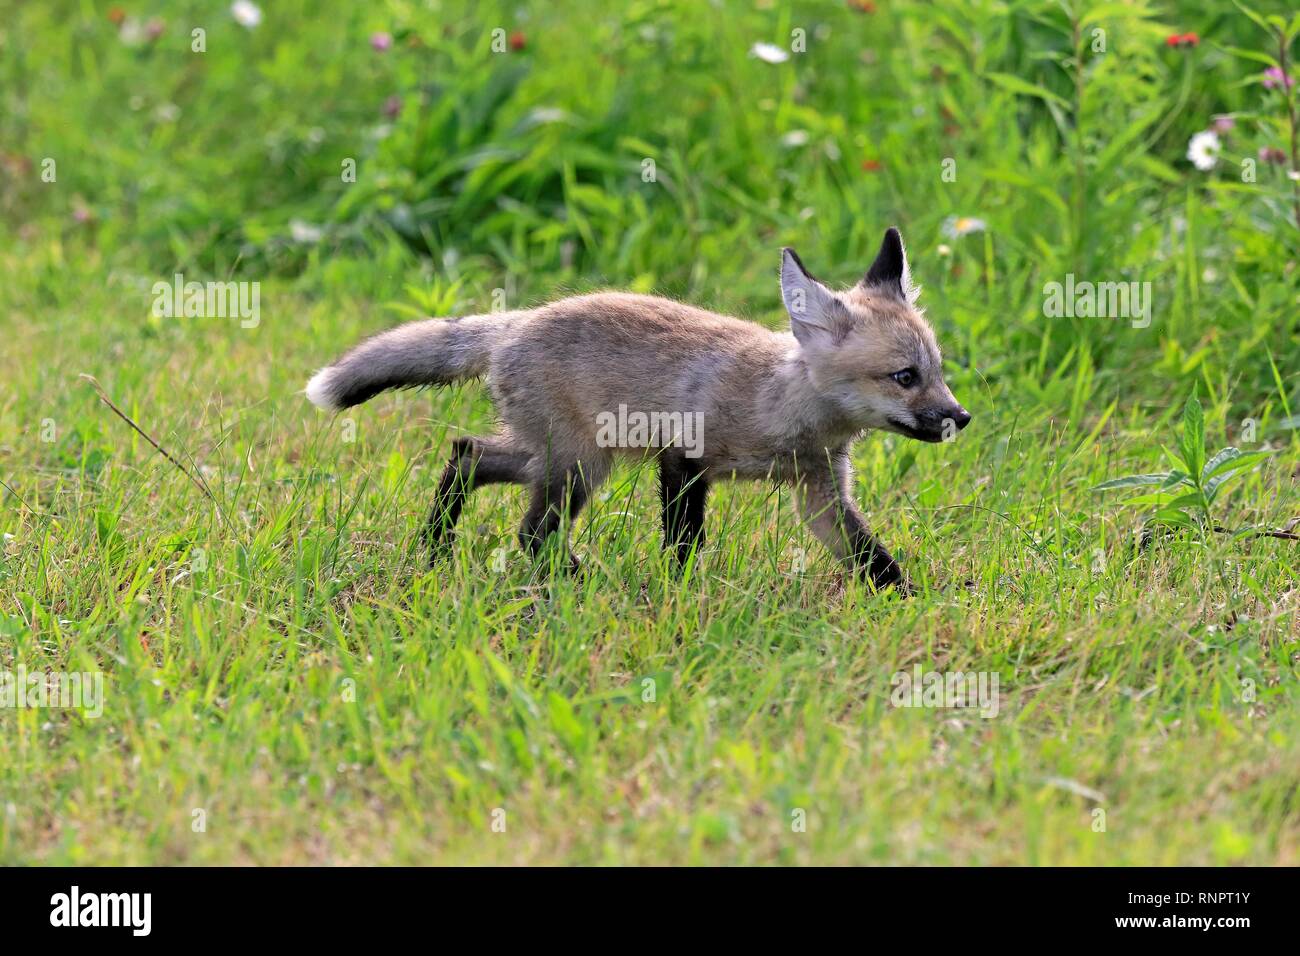 Orientale americana Red Fox (Vulpes vulpes fulvus), giovane animale in esecuzione sul prato, Contea di pino, Minnesota, Stati Uniti d'America Foto Stock